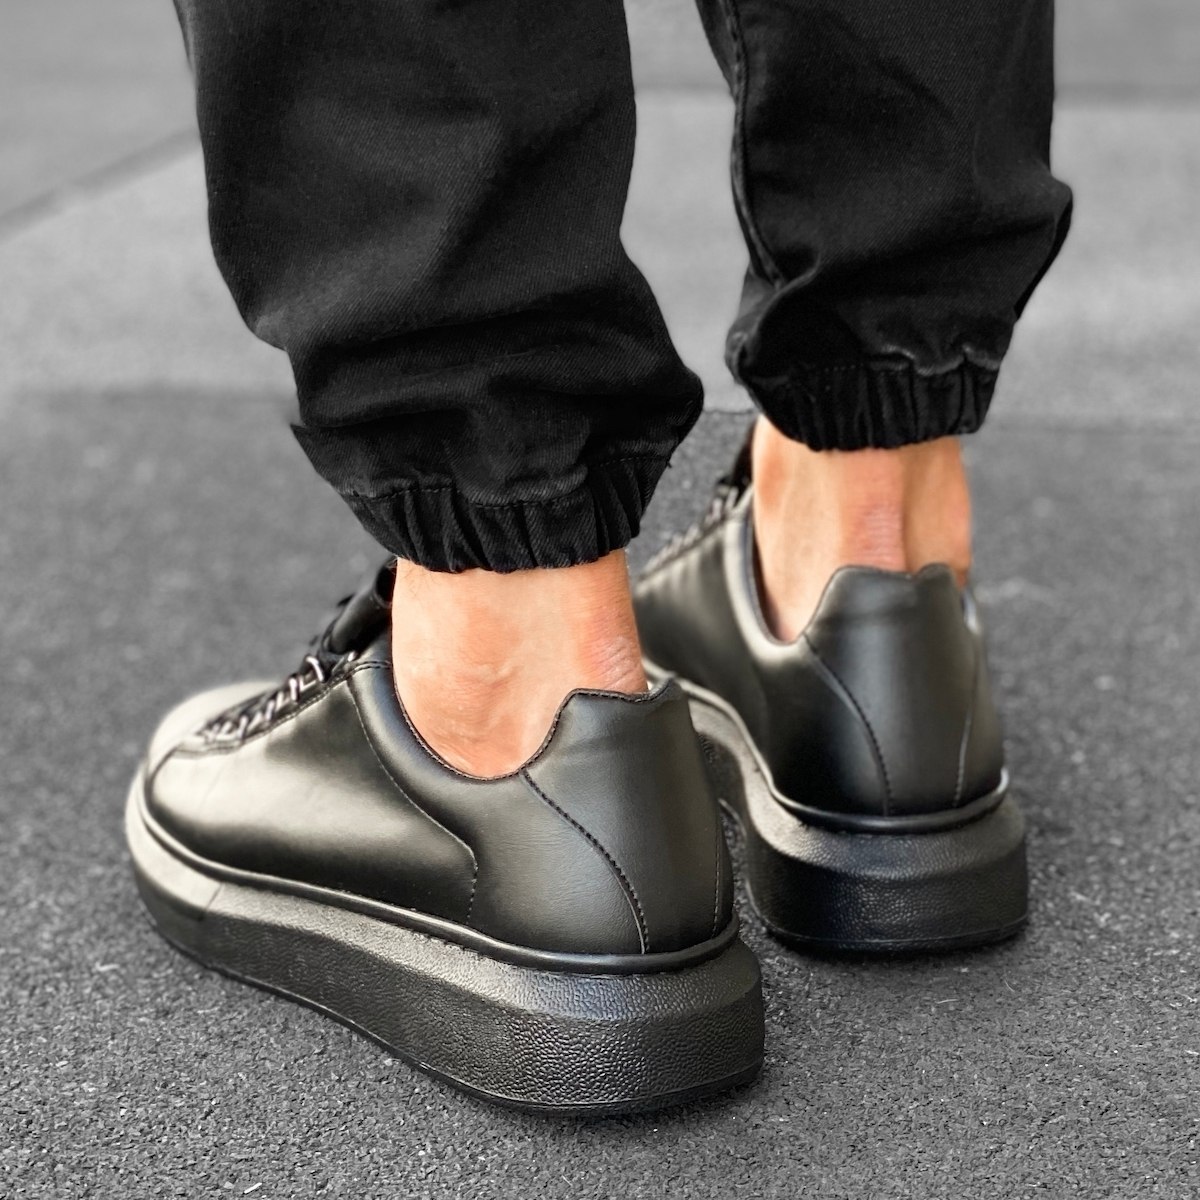 Herren hohe Low Top Sneakers Schuhe in schwarz - 5